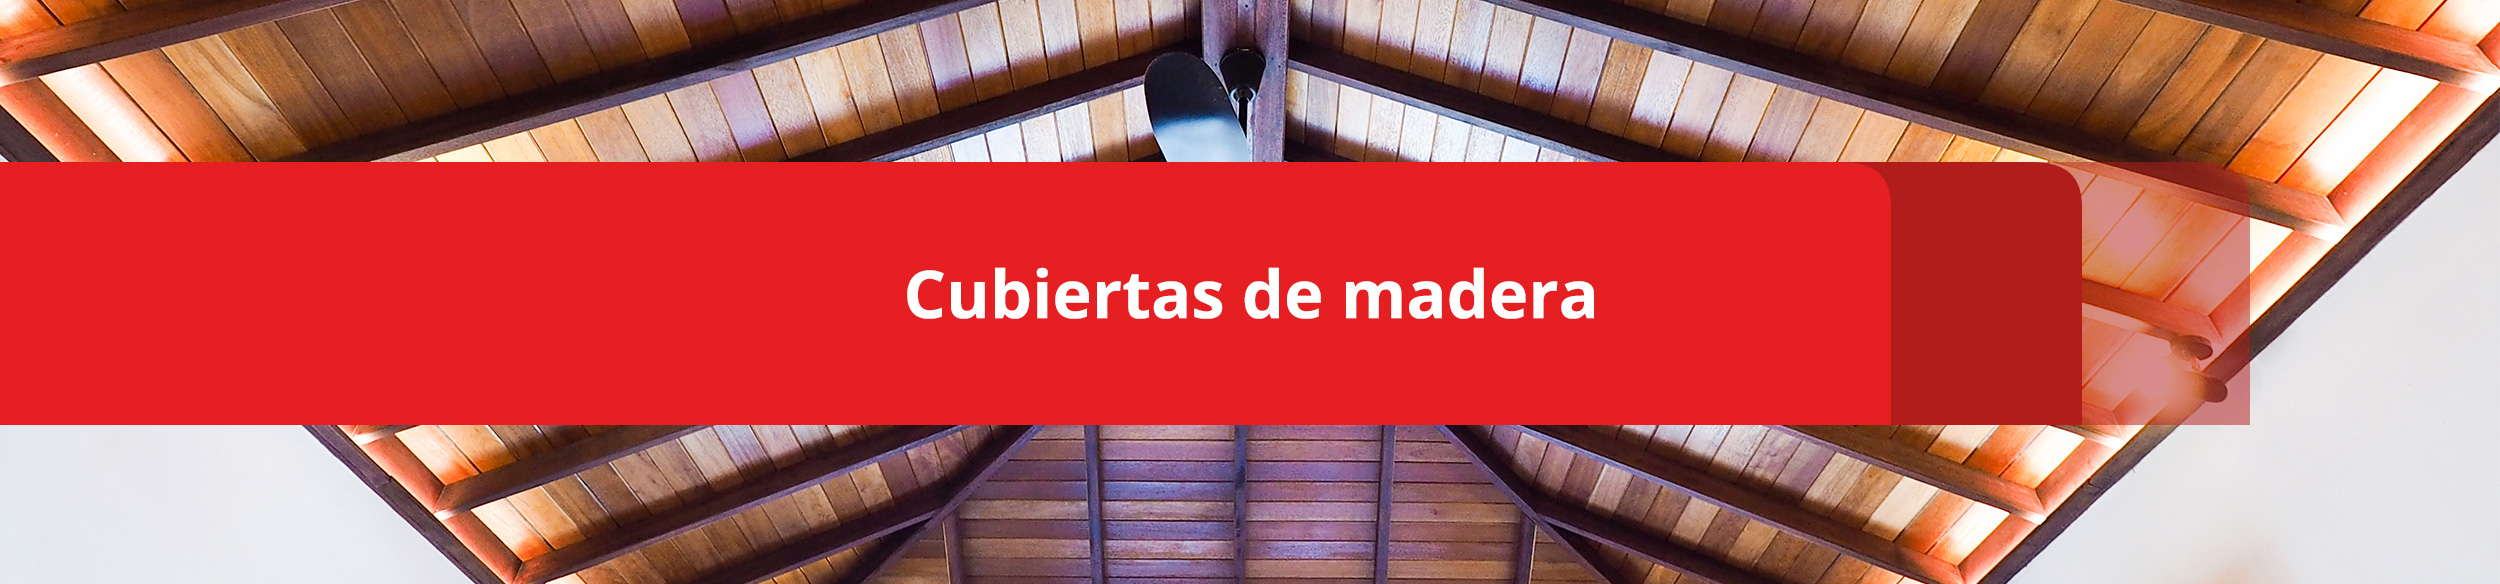 imagen principal cubiertas de madera 2.web sc - Cubiertas de Madera